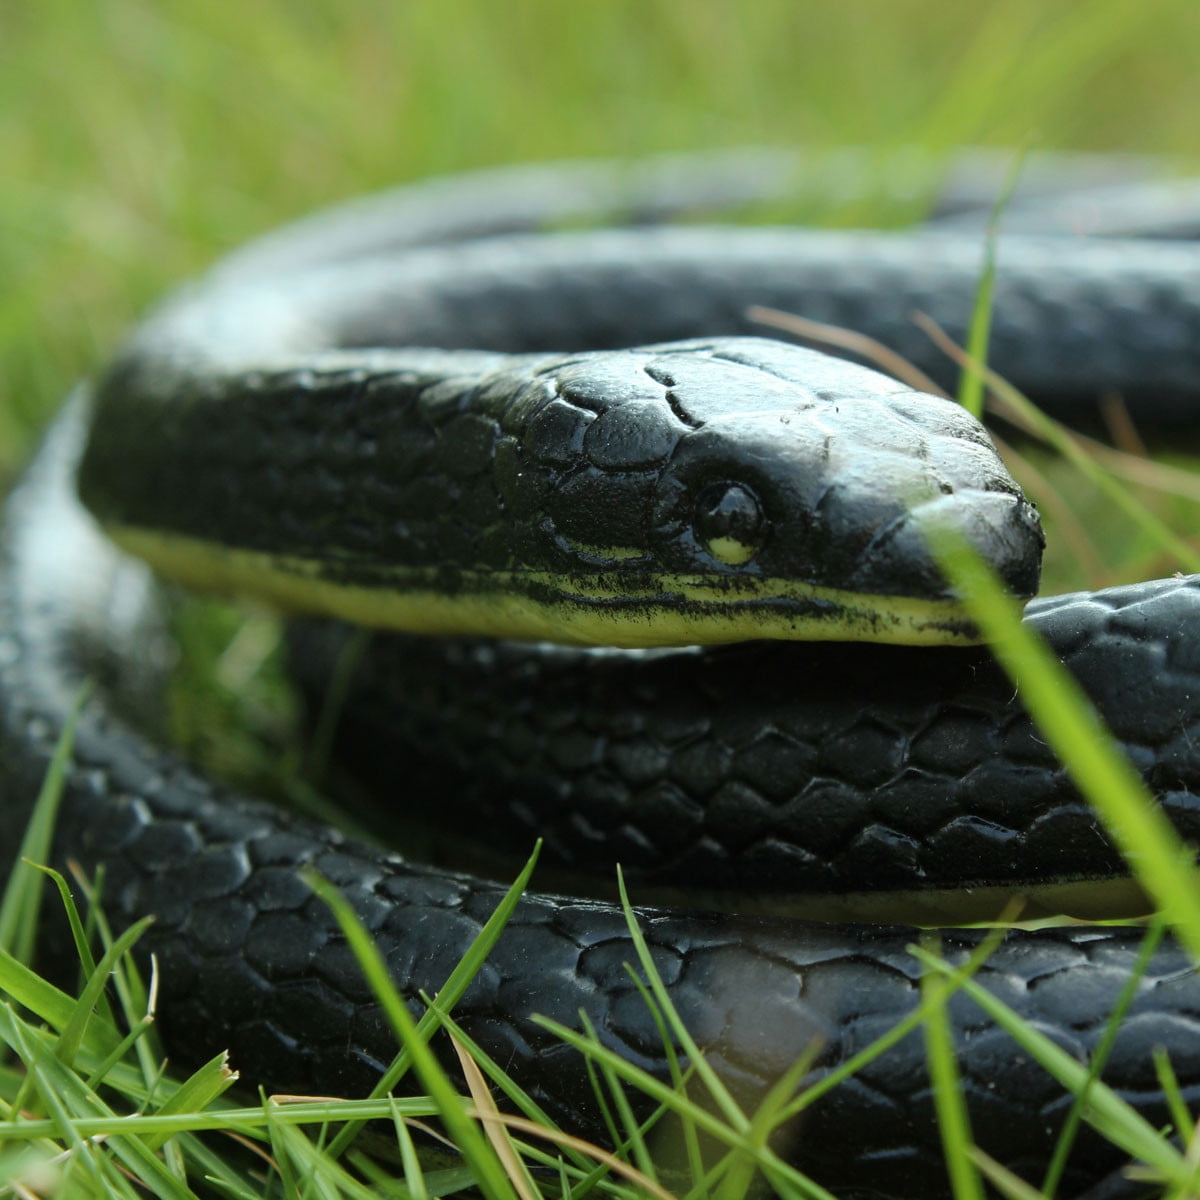 soft rubber snake